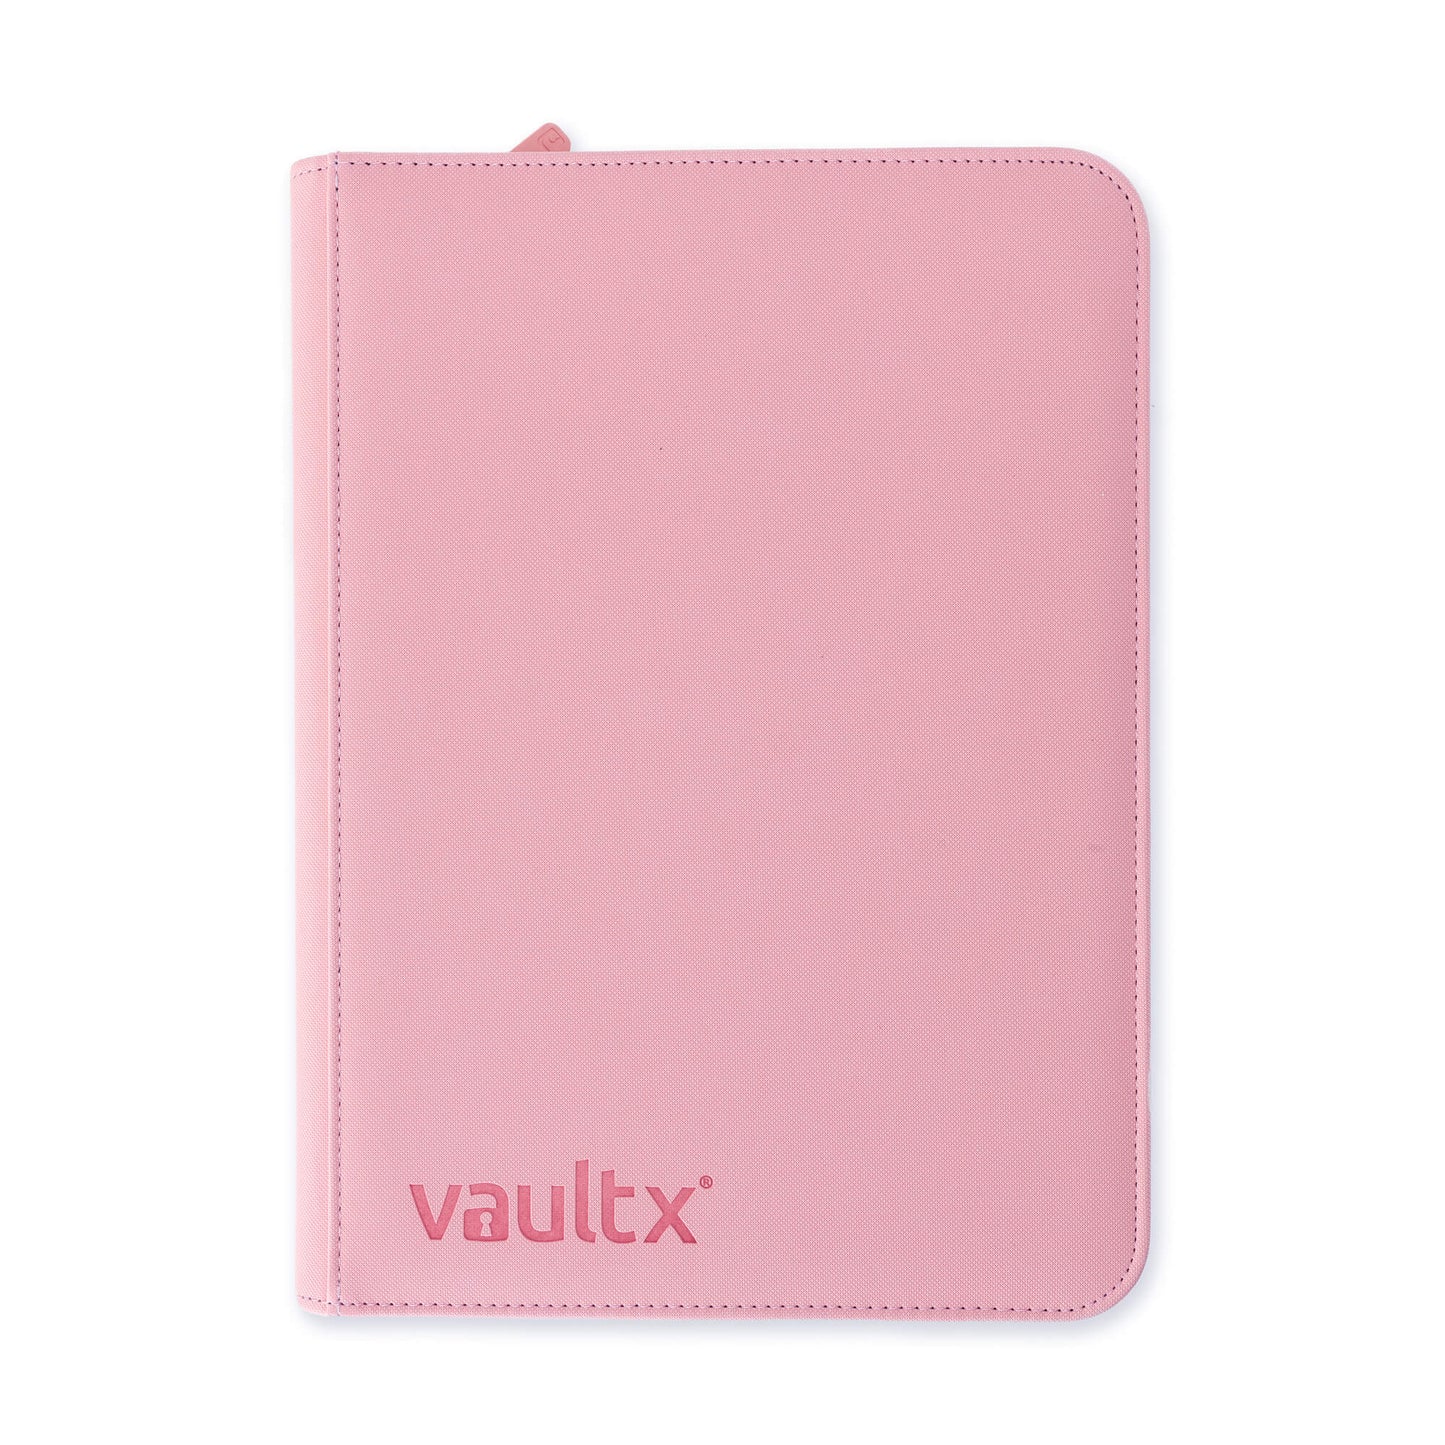 Vault X - 9 Pocket Exo-Tec Zip Binder - Just Pink